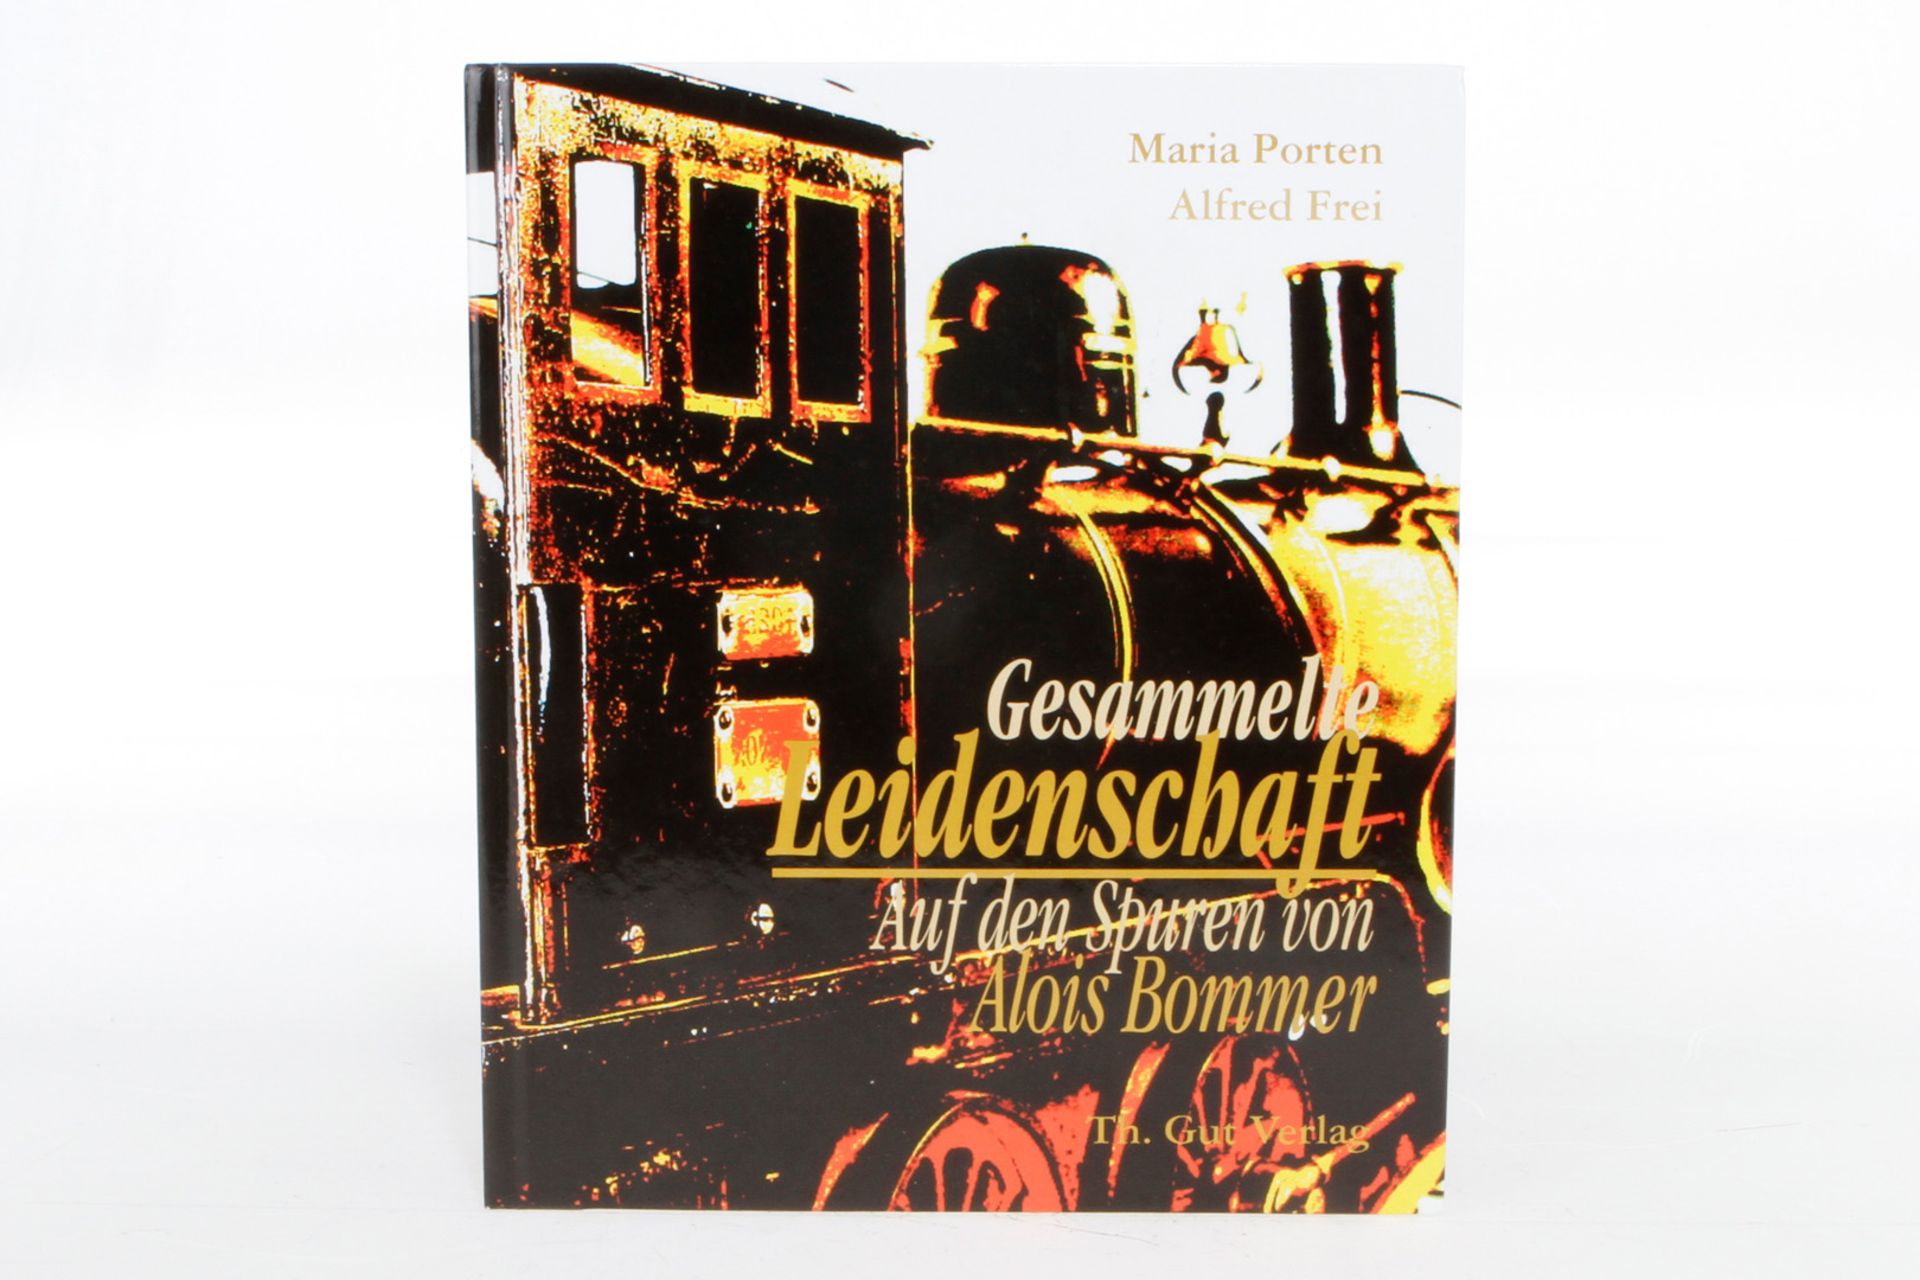 Bommer-Buch ”Gesammelte Leidenschaft”, Alterungsspuren